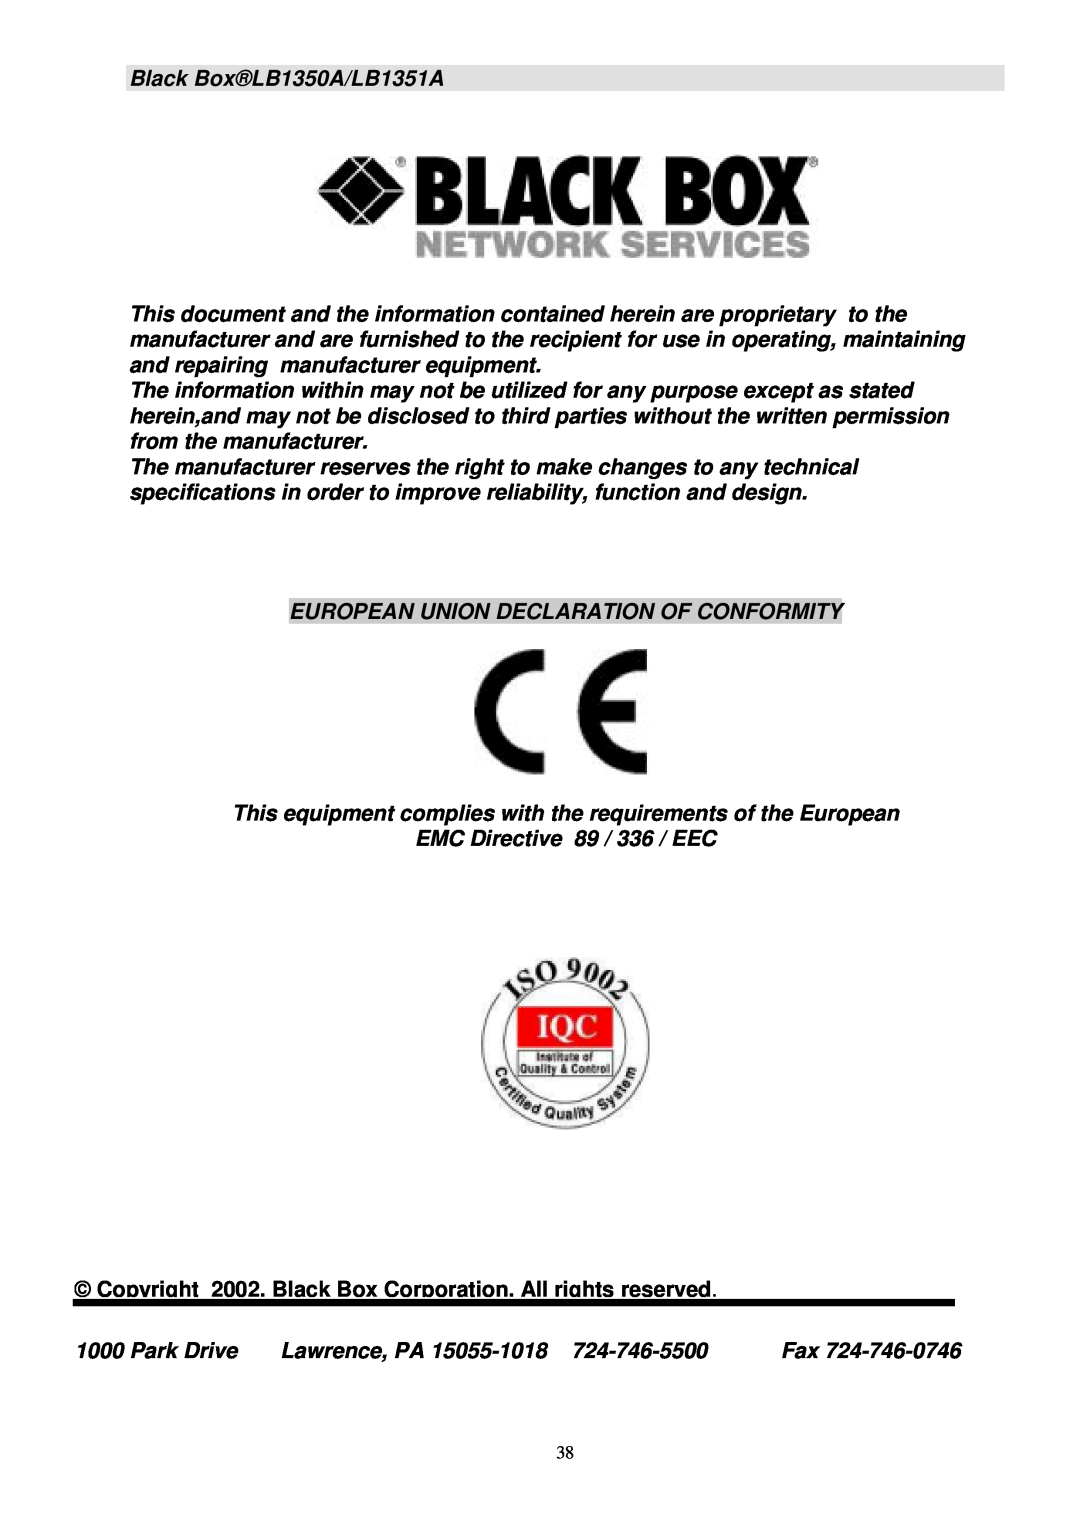 Black Box Black BoxLB1350A/LB1351A, European Union Declaration Of Conformity, EMC Directive 89 / 336 / EEC, Park Drive 